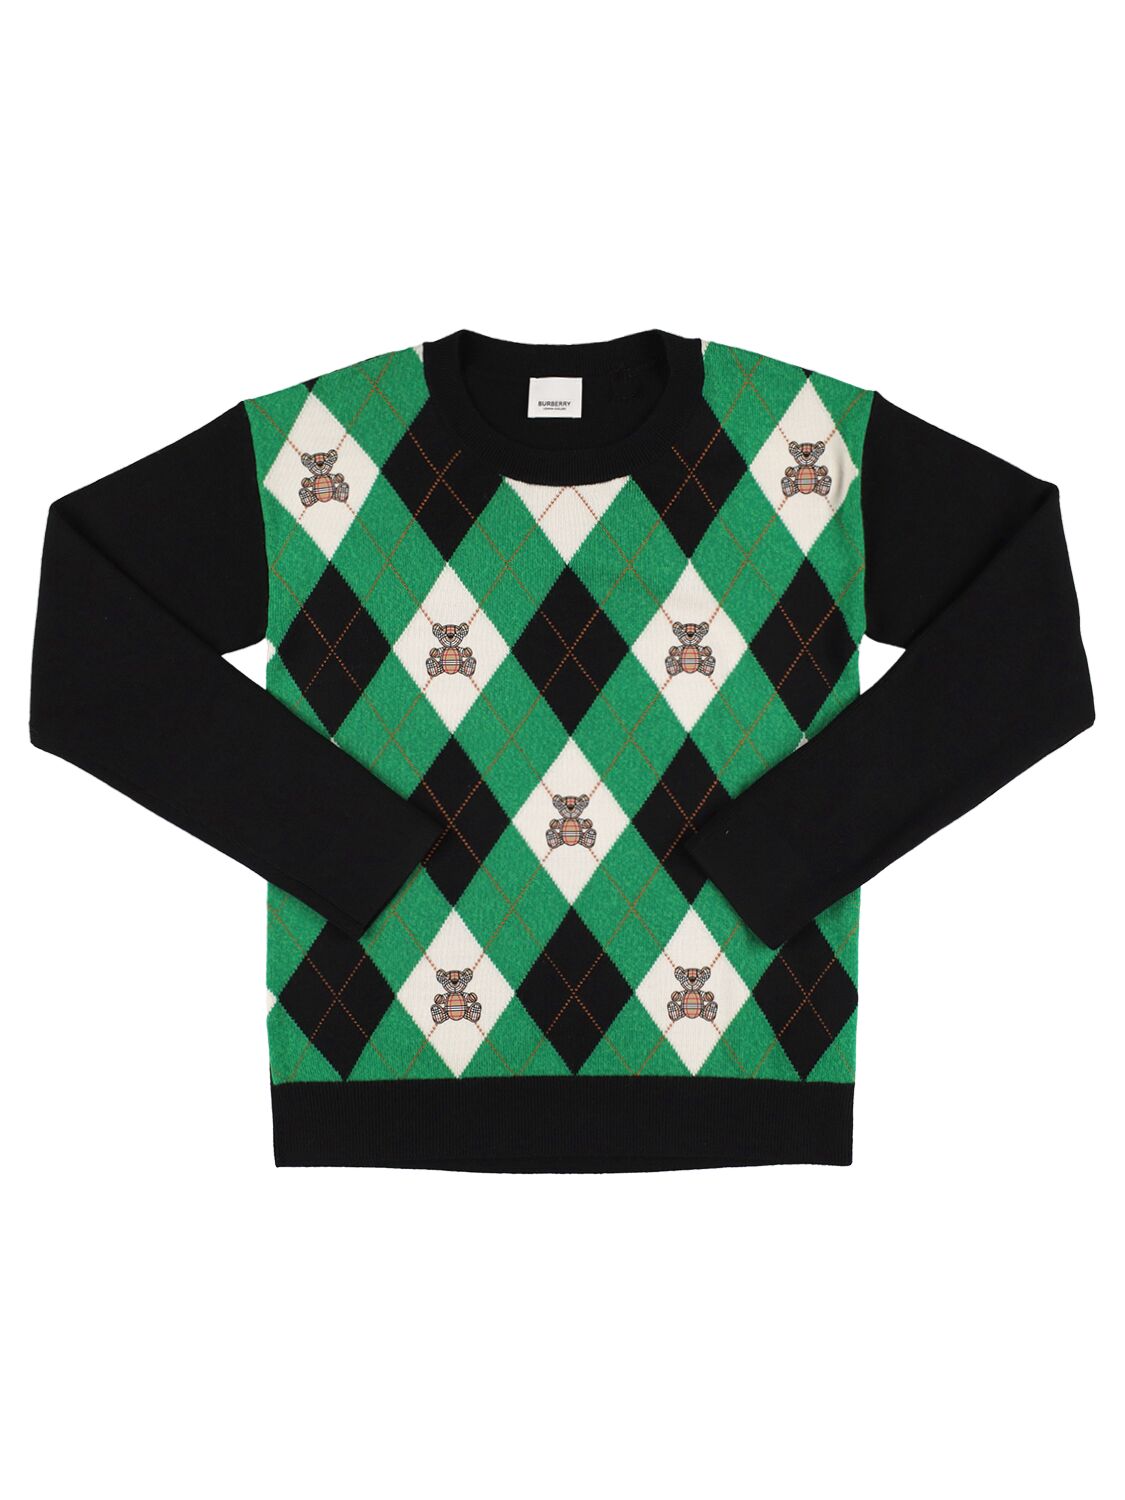 Burberry Kids' Rhombus Print Wool Knit Sweater In Green,black